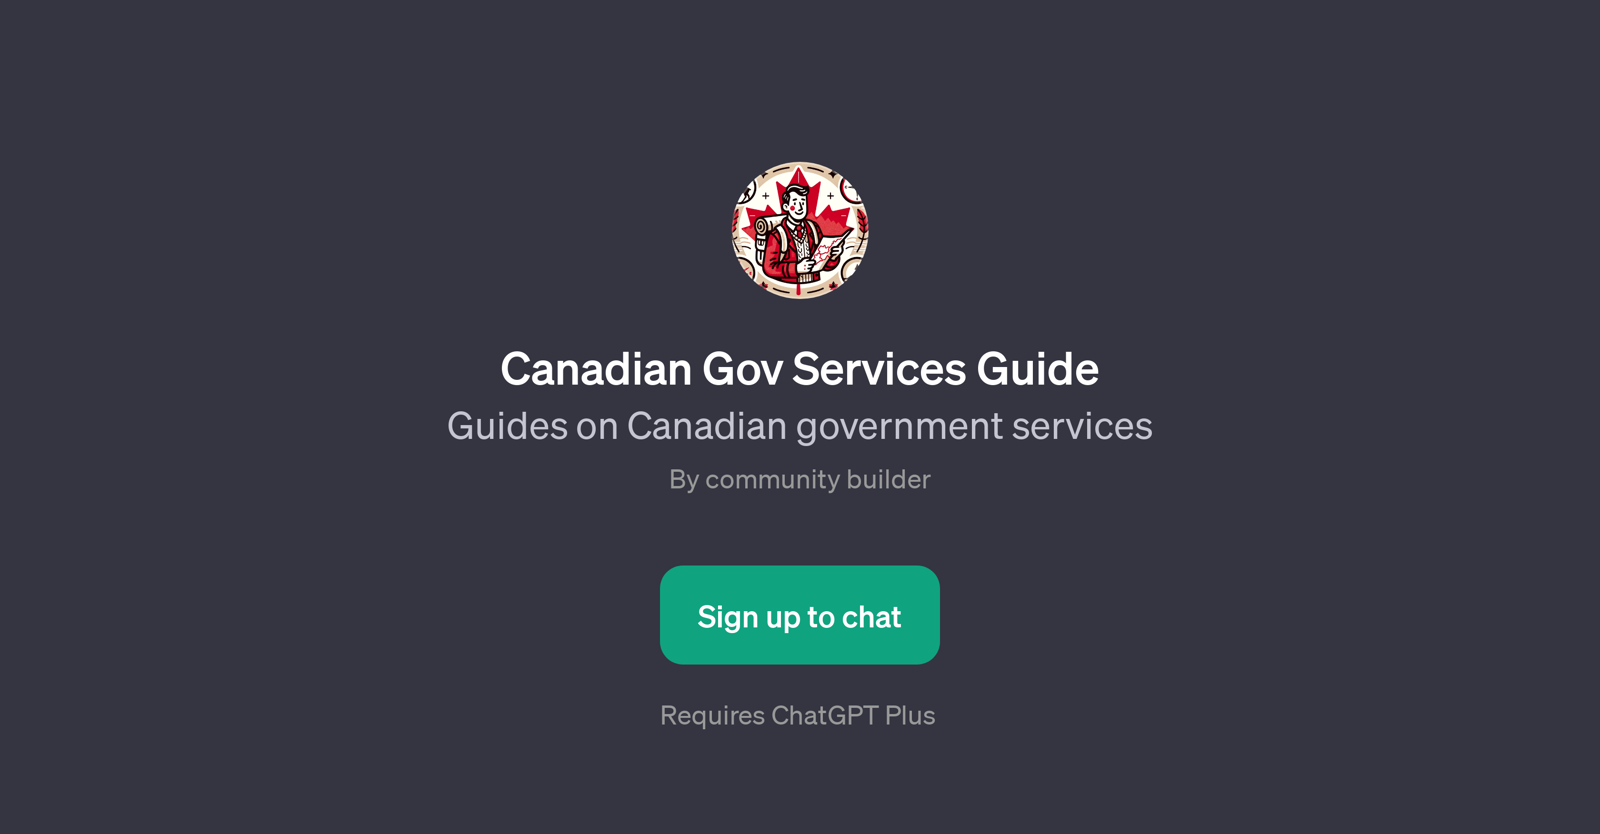 Canadian Gov Services Guide website